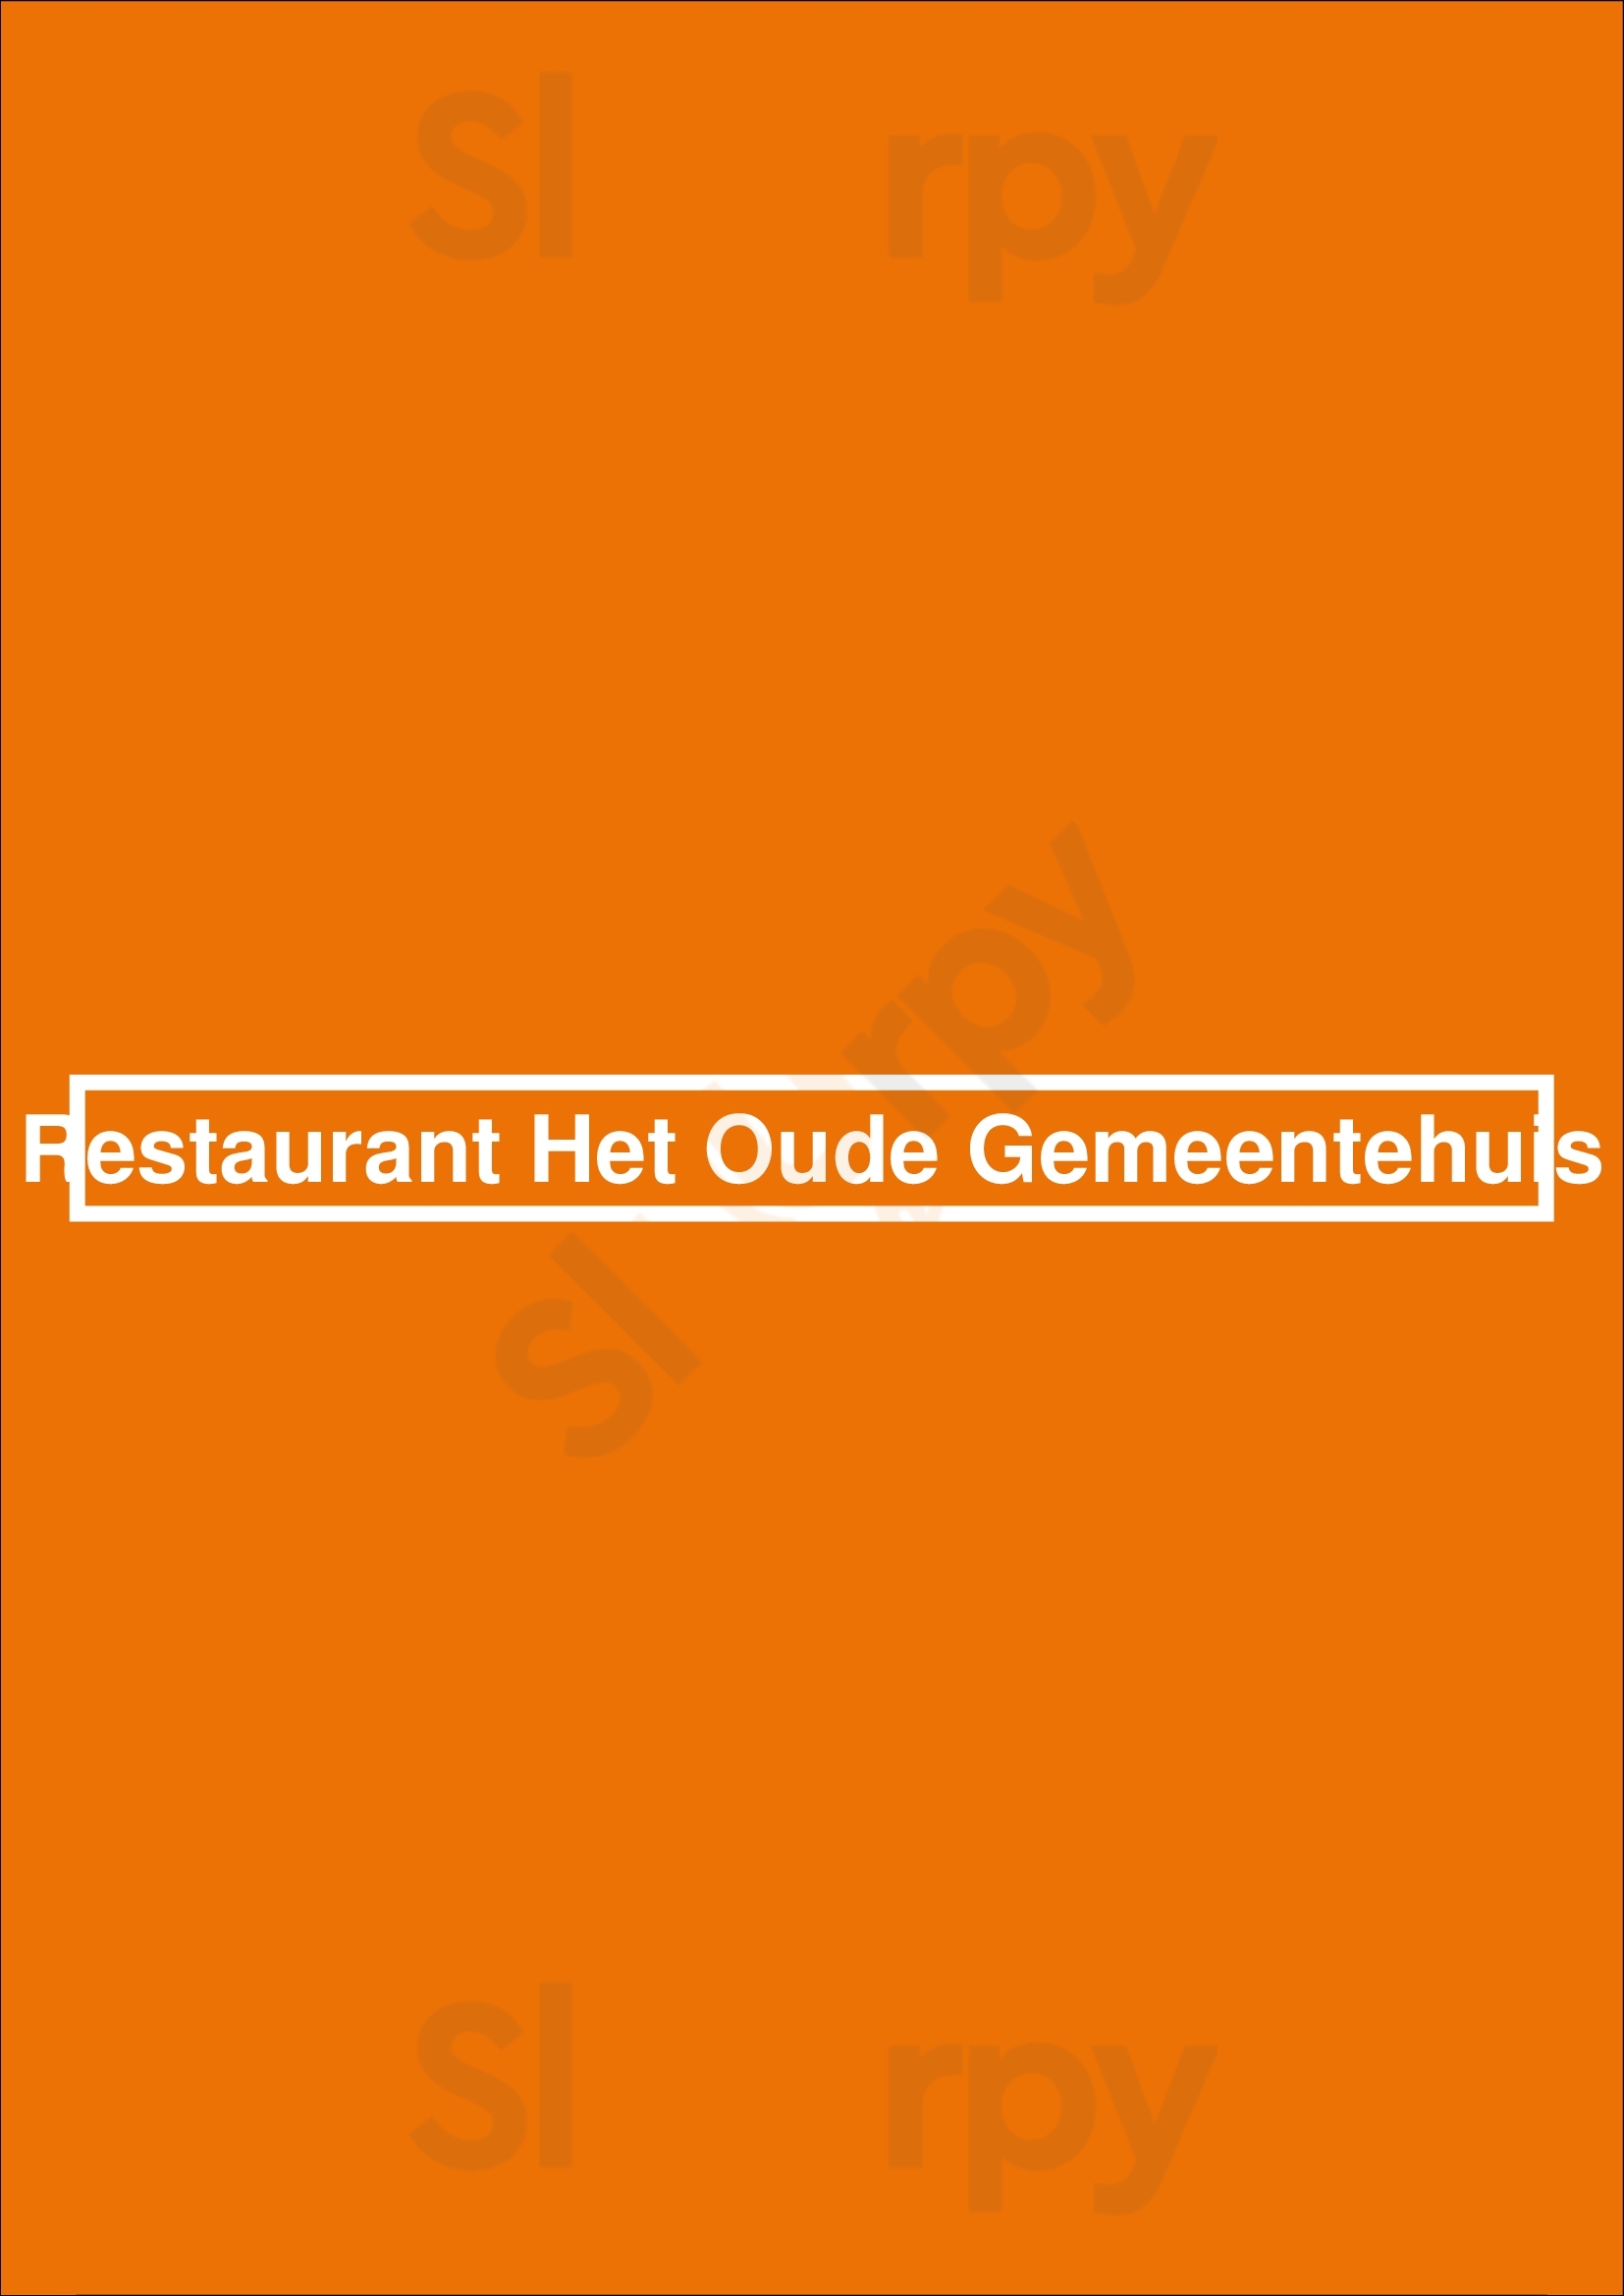 Restaurant Het Oude Gemeentehuis Rhenen Menu - 1